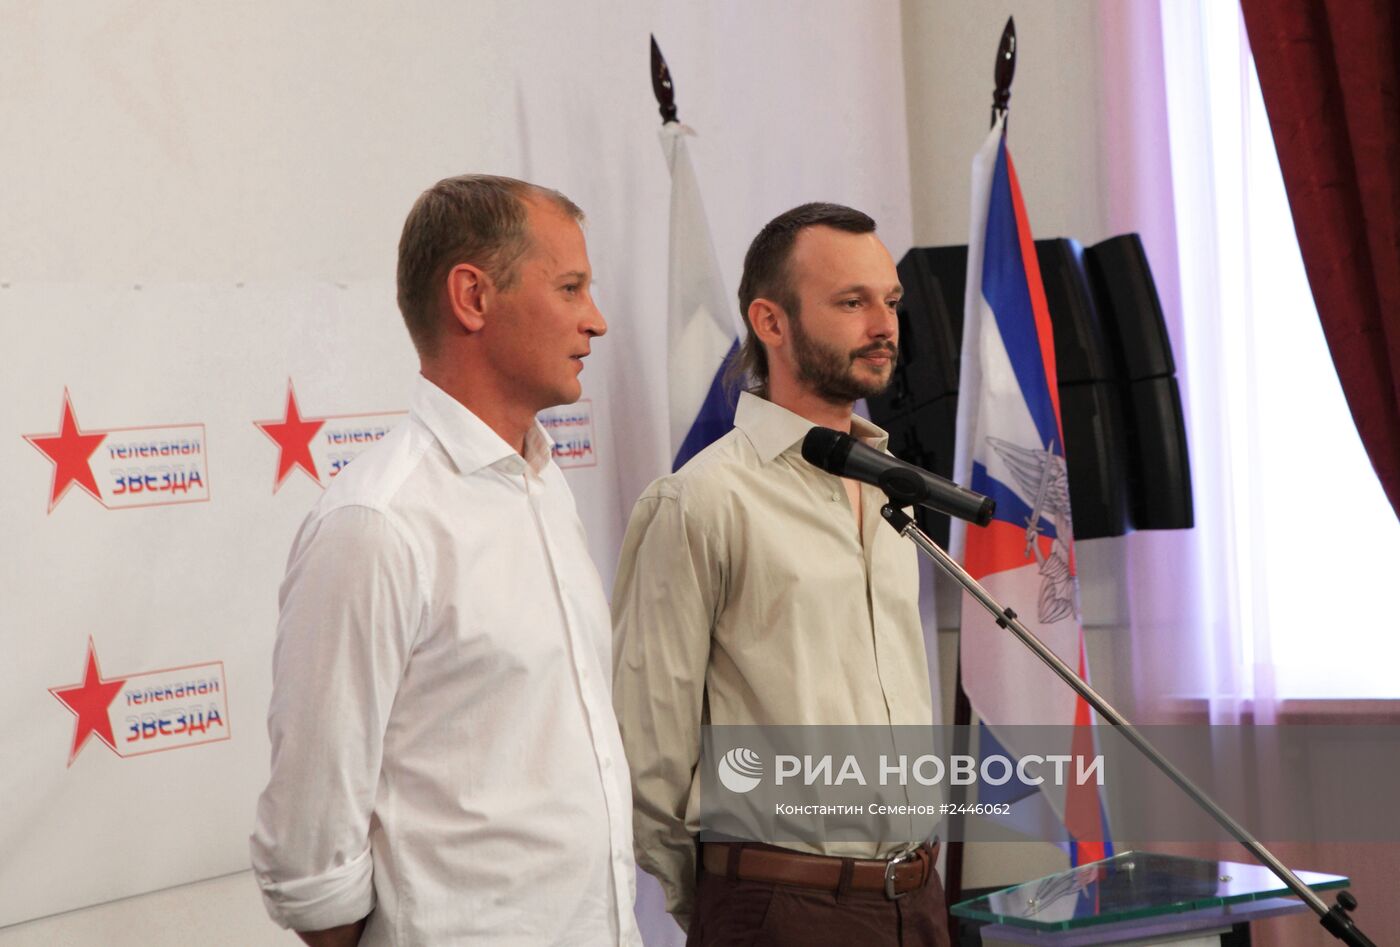 Пресс-конференция освобожденных журналистов телеканала "Звезда"